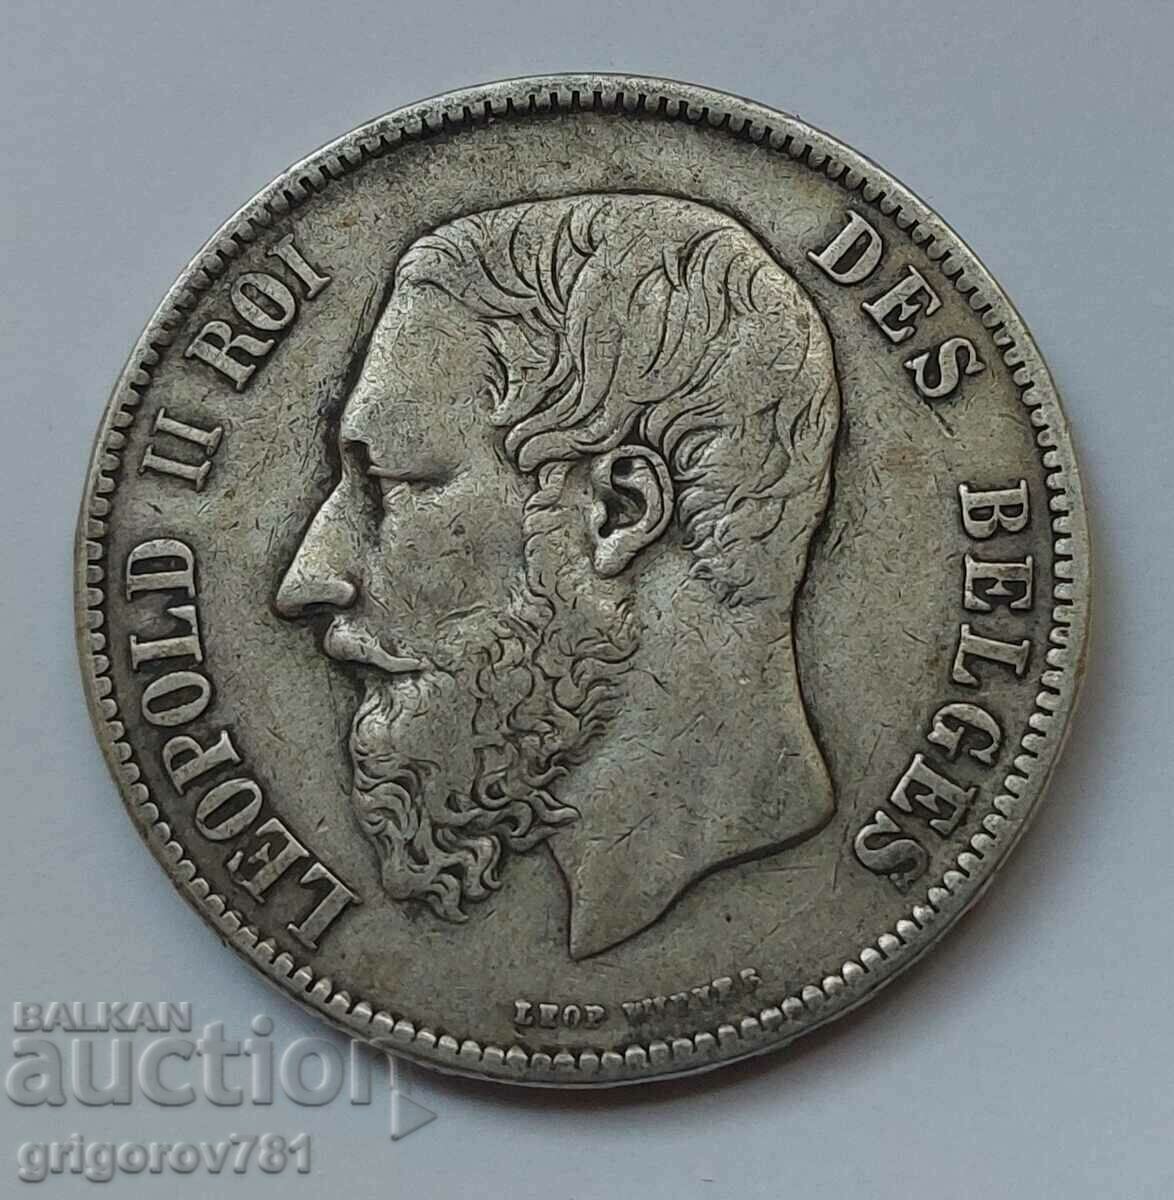 5 Francs Silver Belgium 1870 - Silver Coin #231